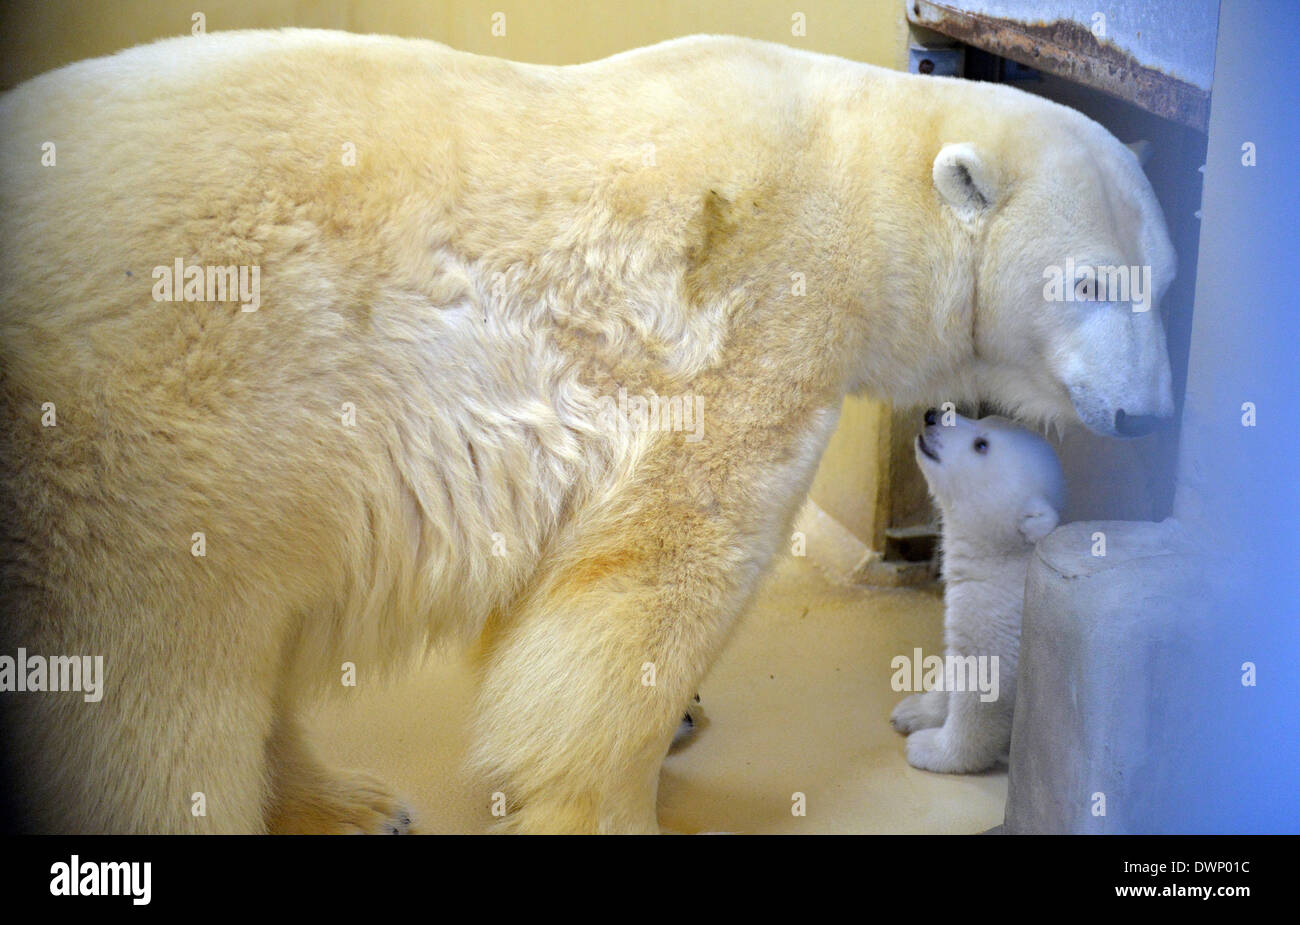 Bremerhaven, Deutschland. 12. März 2014. Ein Eisbär-Baby spielt mit seiner Mutter Valeska in der "Zoo am Meer" (lit.) Zoo am Meer) in Bremerhaven, Deutschland, 12. März 2014. Das Baby wurde am 16. Dezember 2013 geboren und jetzt lässt seine Geburt Höhle zum ersten Mal. Foto: CARMEN JASPERSEN/Dpa/Alamy Live News Stockfoto